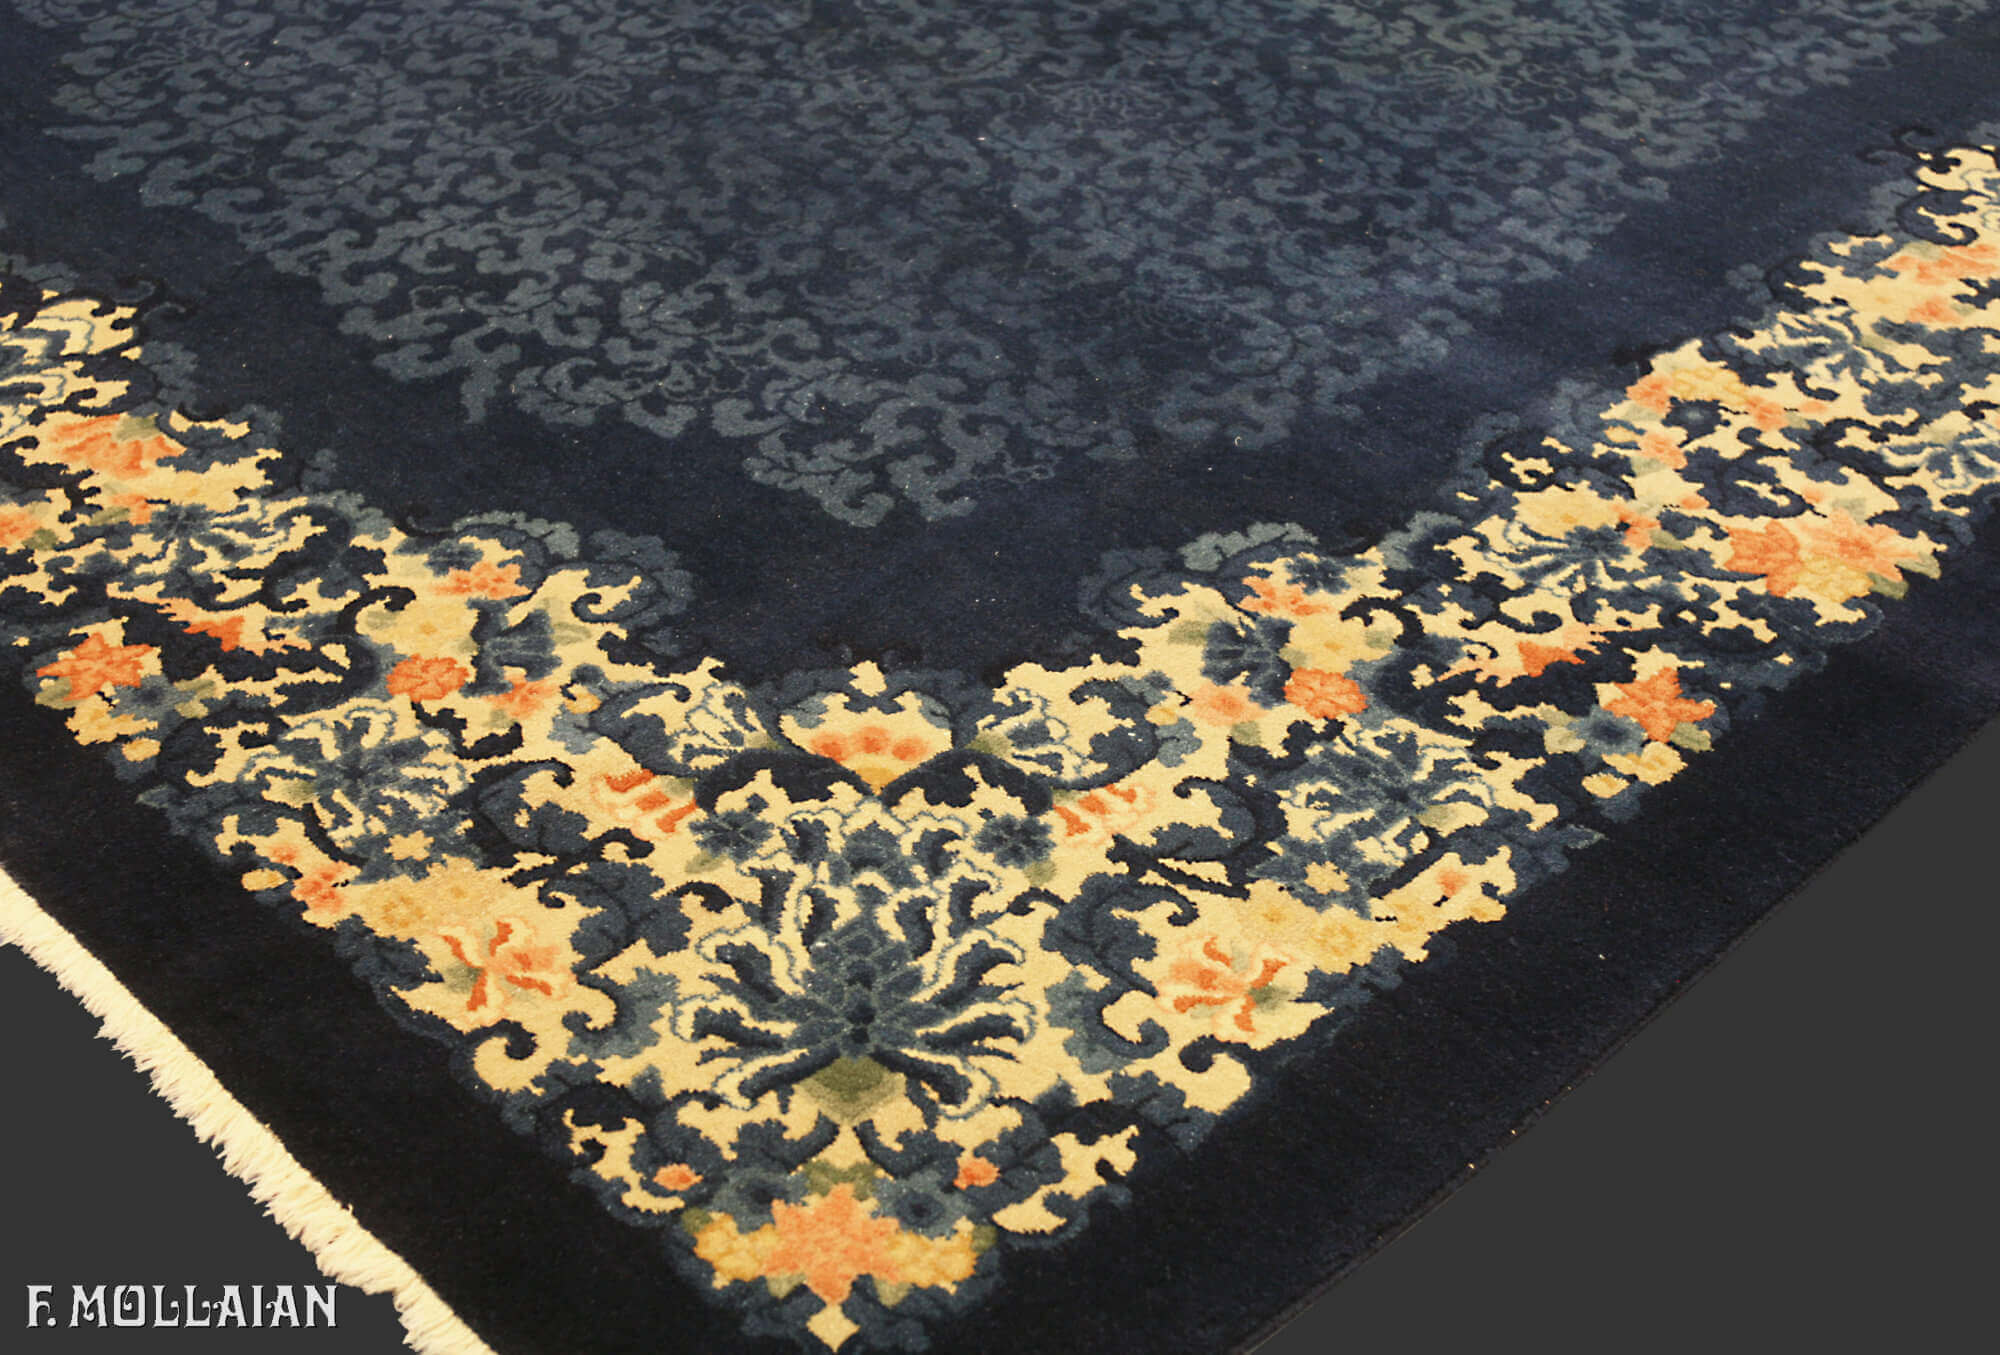 大型古董北京尼科尔斯中国地毯 n°:82696989